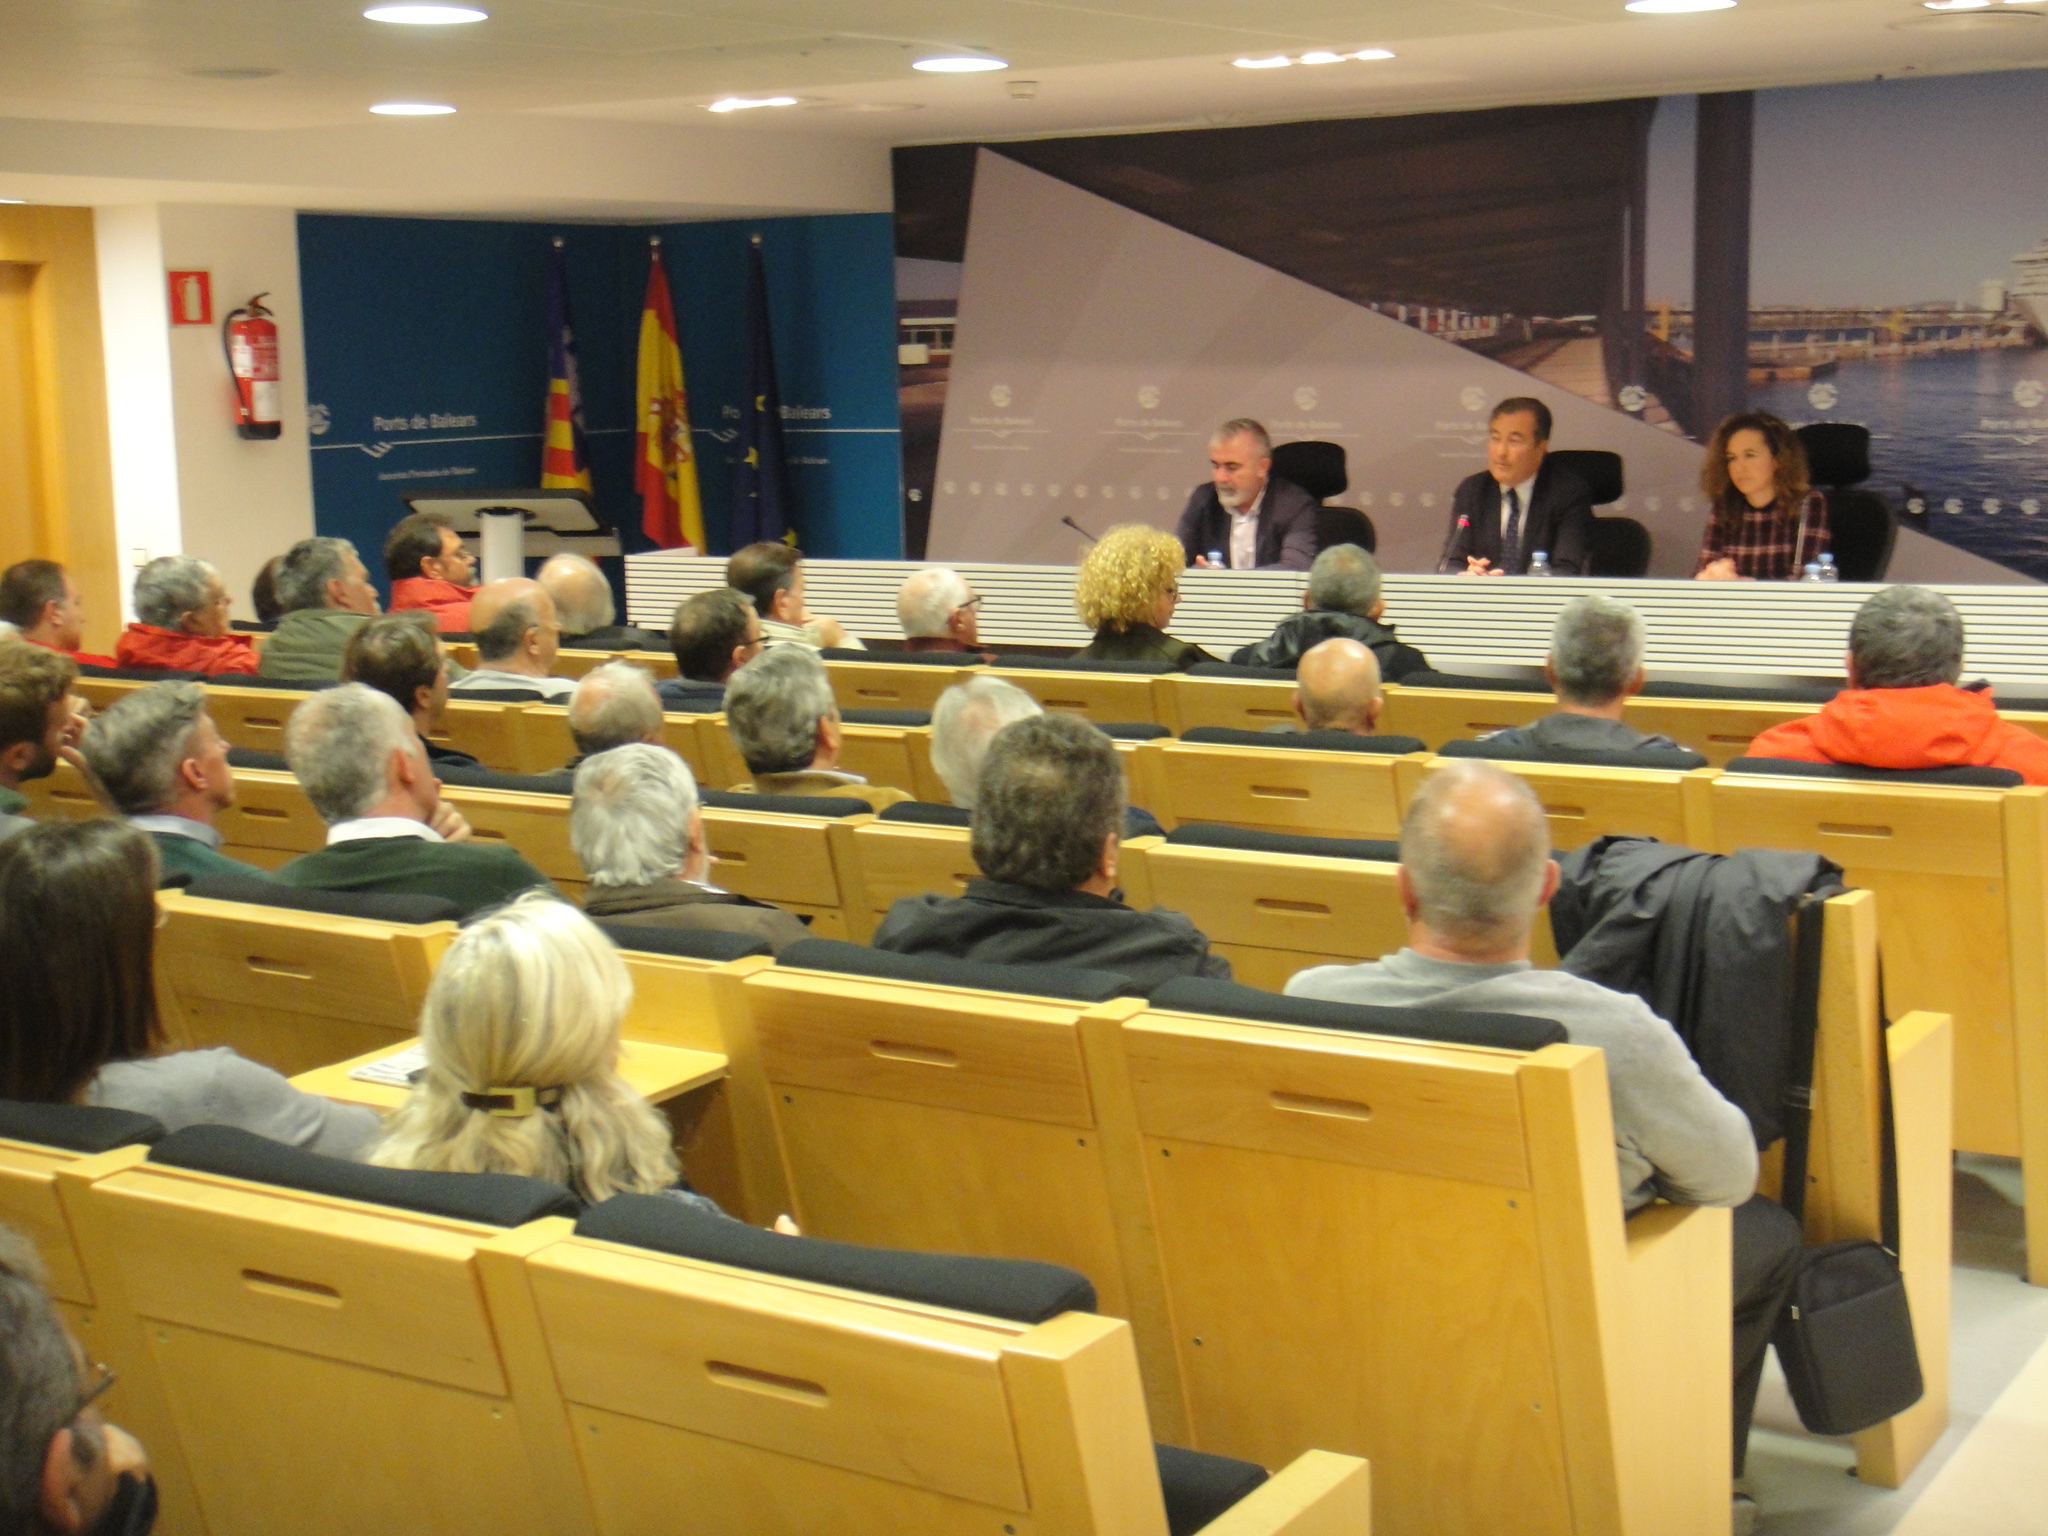 Die APB nimmt den Vorschlag des Club Marítimo Molinar de Levante für die Vorstellung eines neuen Projekts zur Fortsetzung seiner Konzession an